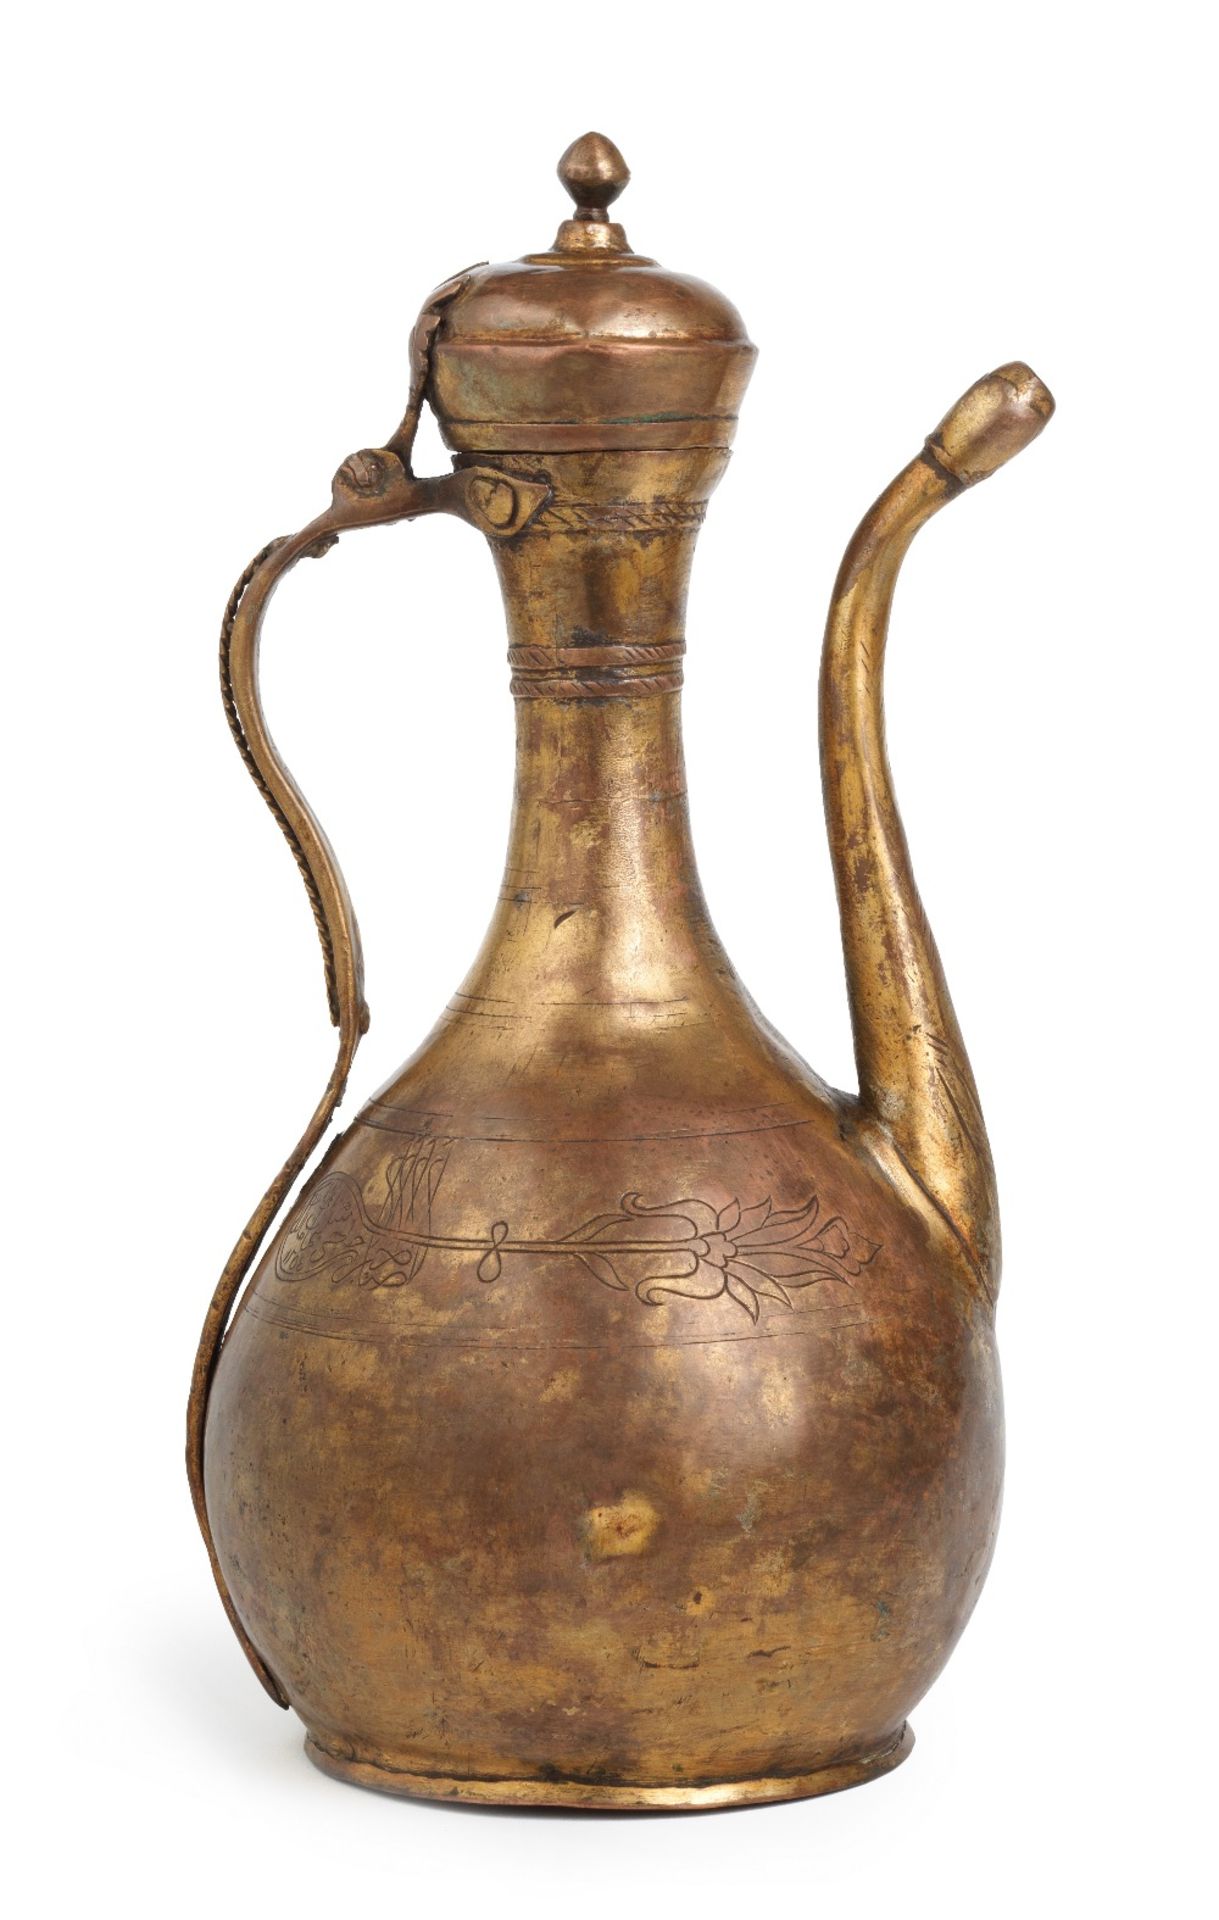 An Ottoman gilt-copper (tombak) ewer Turkey, dated AH 1254/ AD 1838